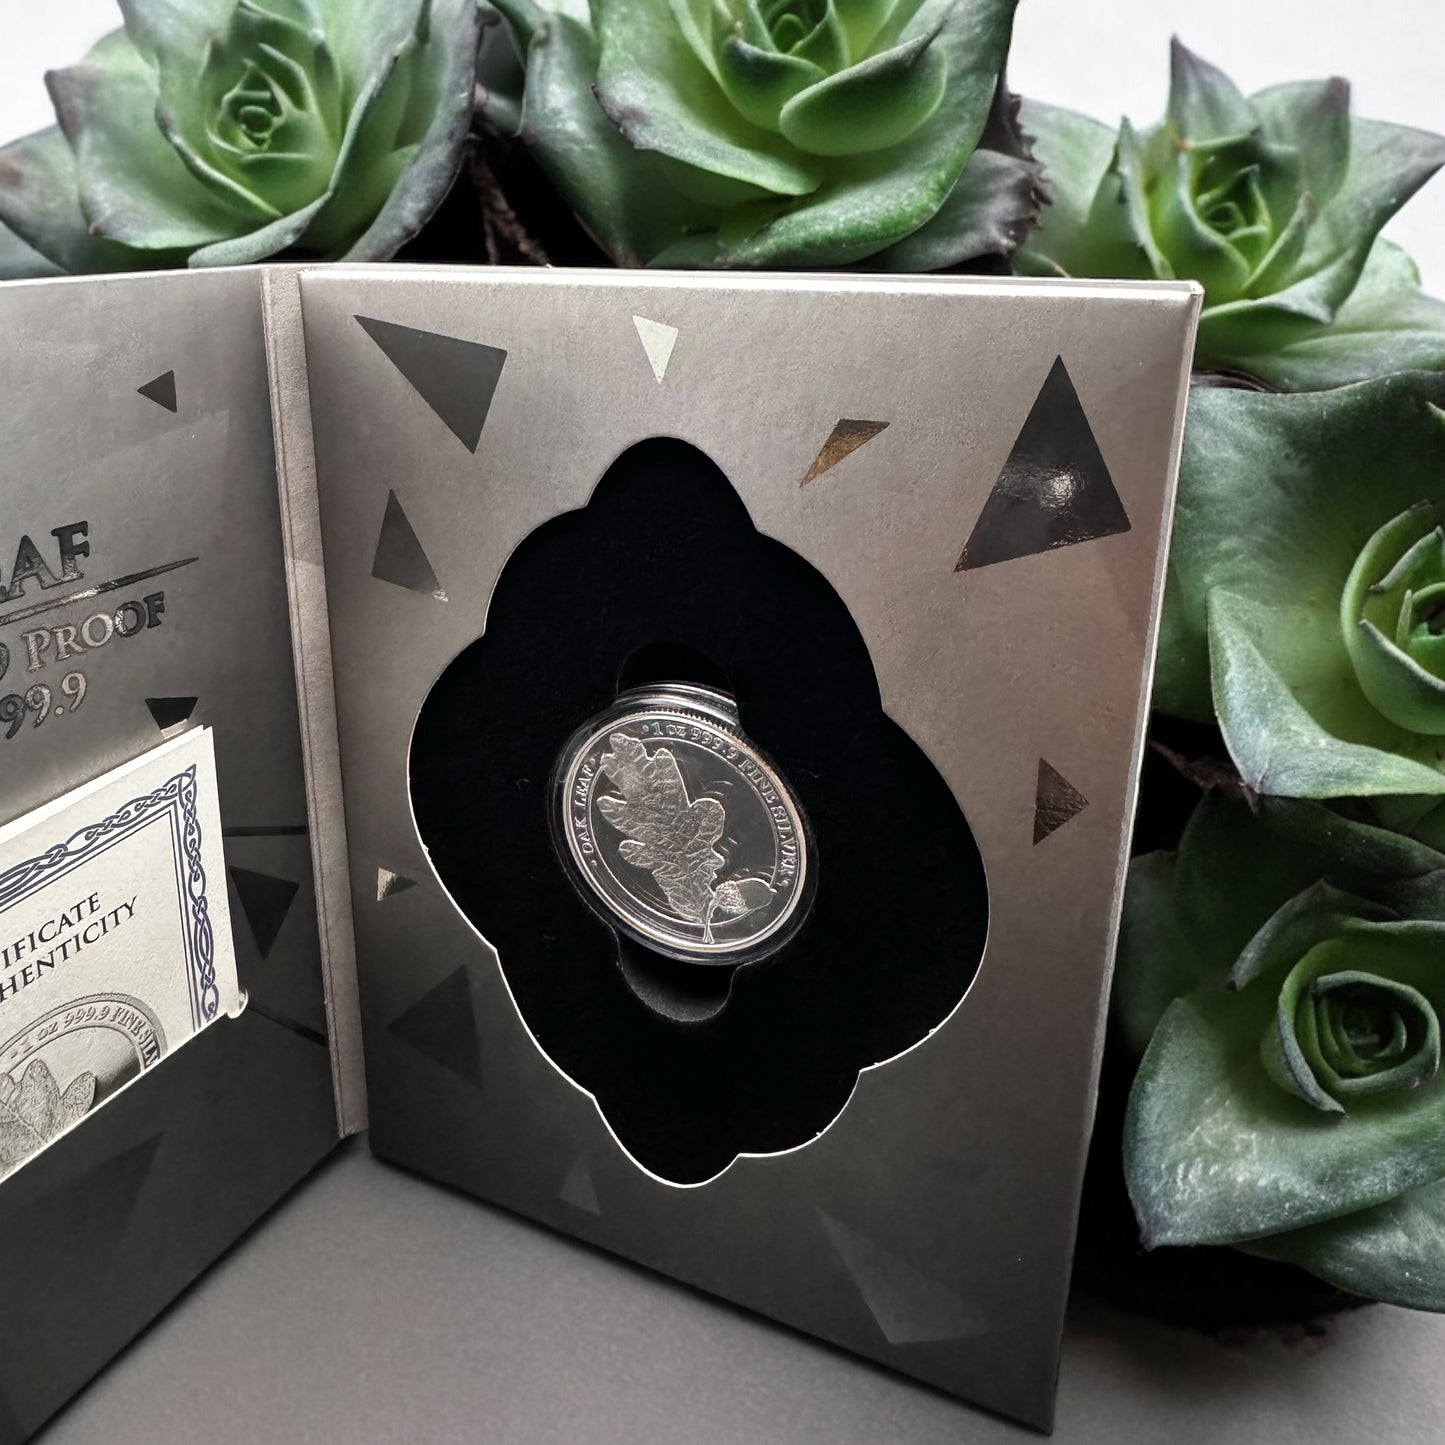 2019 Germania Oak Leaf 1oz Proof Silver Coin